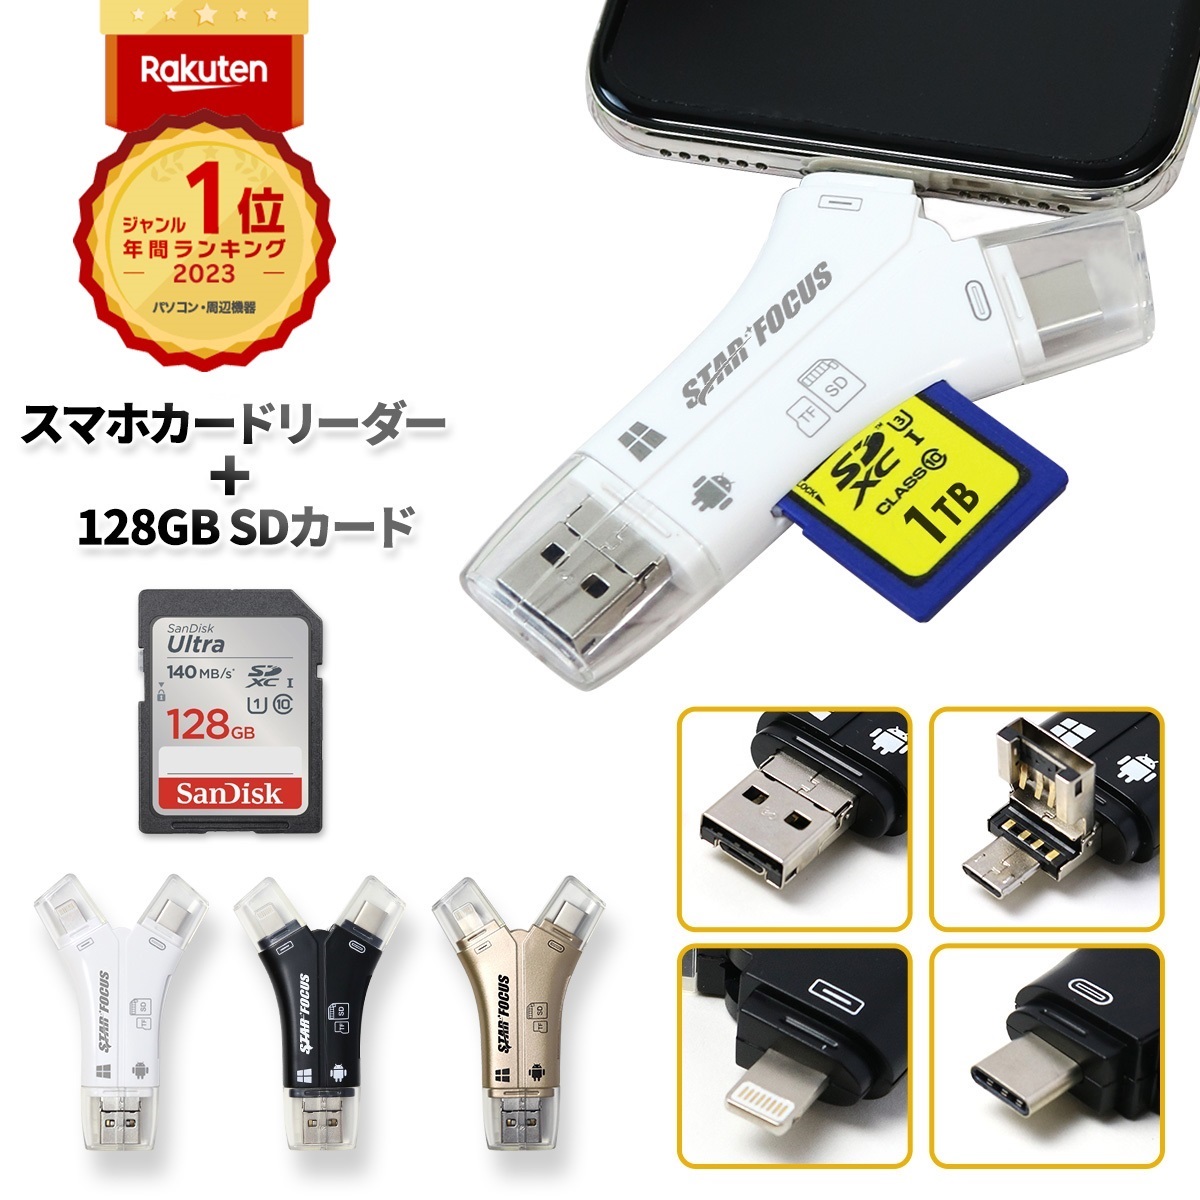 送料無料 1年保証 日本語取説 1TB対応 SDカードリーダー iPhone カードリーダー バックアップ USB USBメモリ 写真 保存 移動 データ SDカードカメラリーダー スマホ